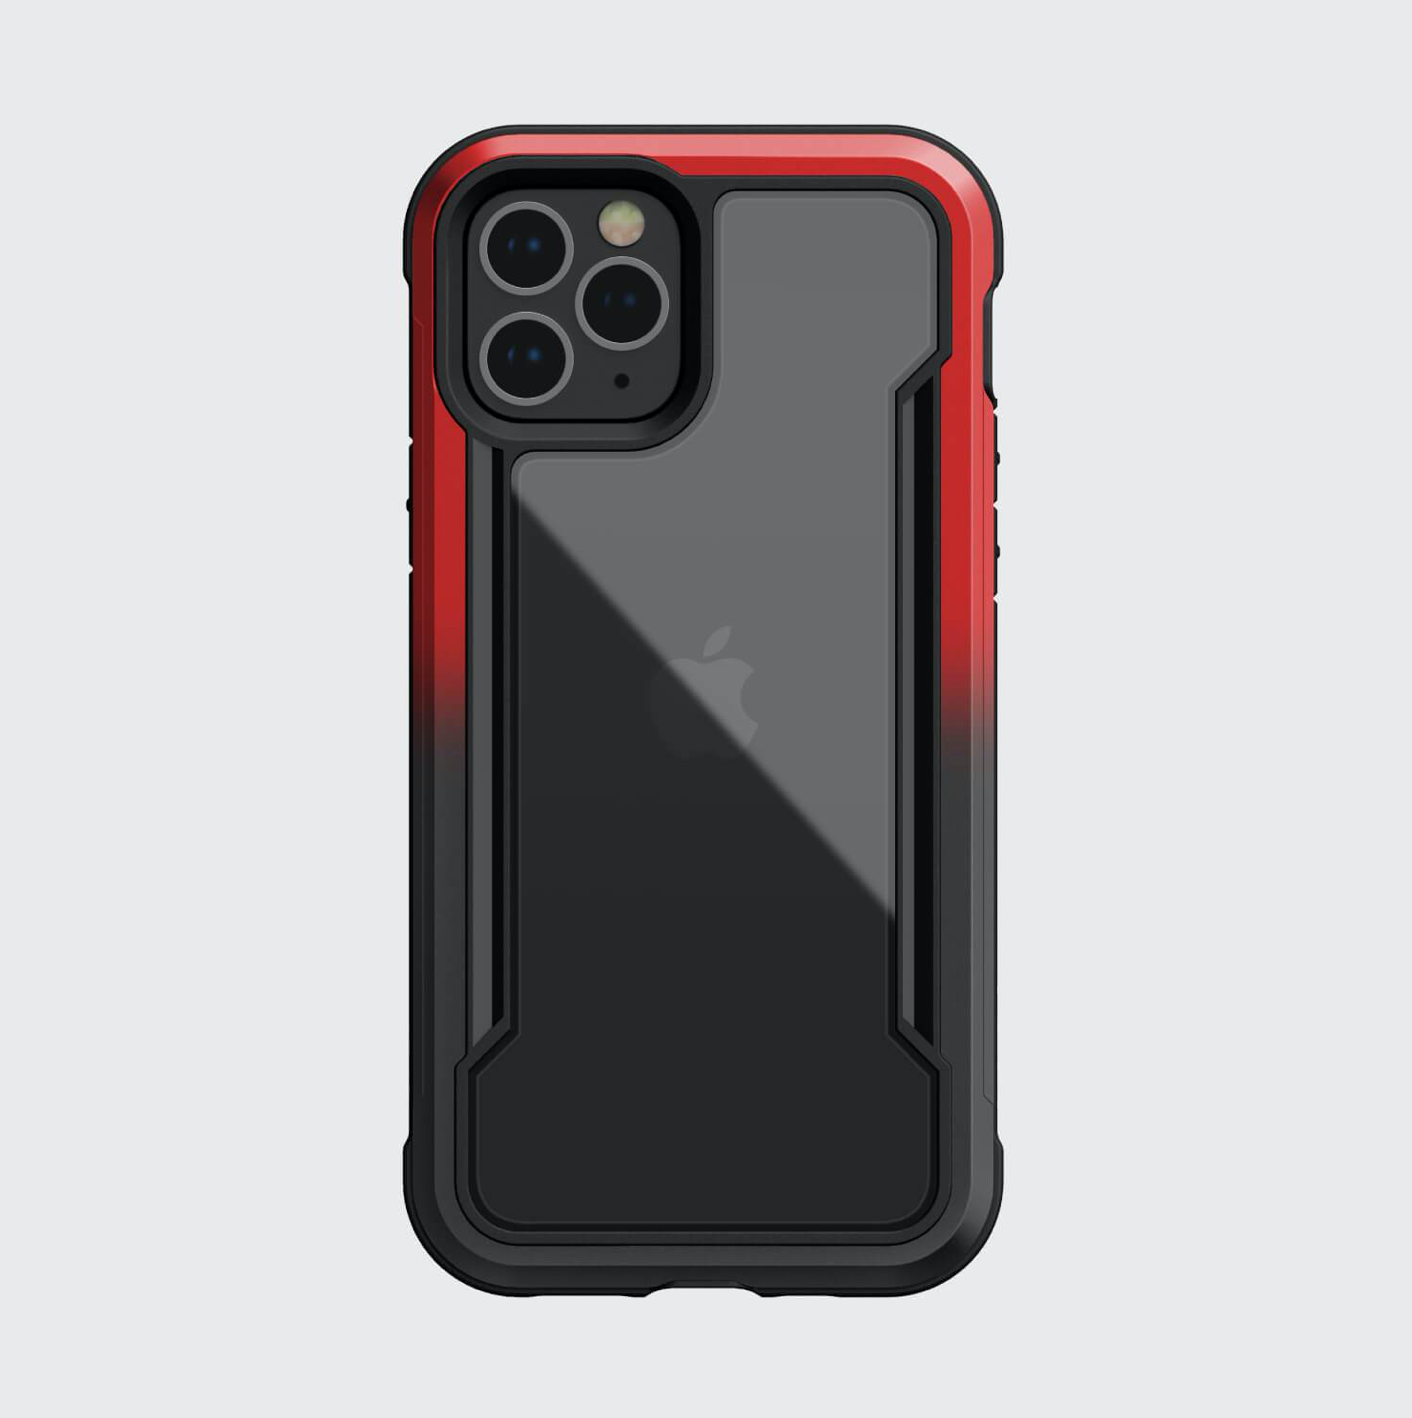 Estuche xdoria raptic shield iphone 12 mini 5.4 color rojo / negro